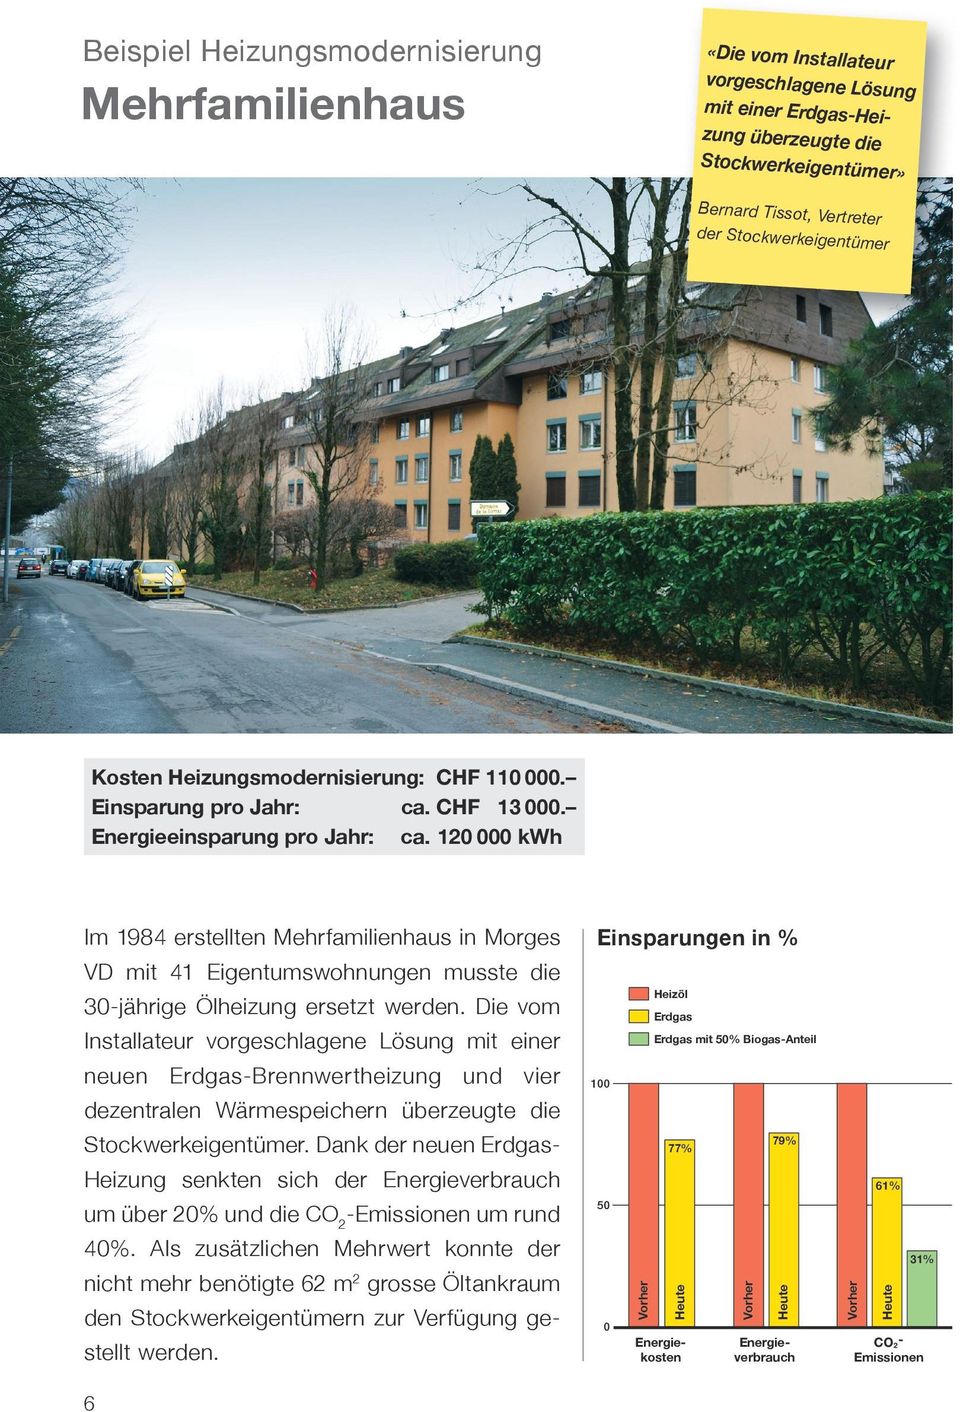 120 000 kwh Im 1984 erstellten Mehrfamilienhaus in Morges VD mit 41 Eigentumswohnungen musste die Einsparungen in % 30-jährige Ölheizung ersetzt werden.